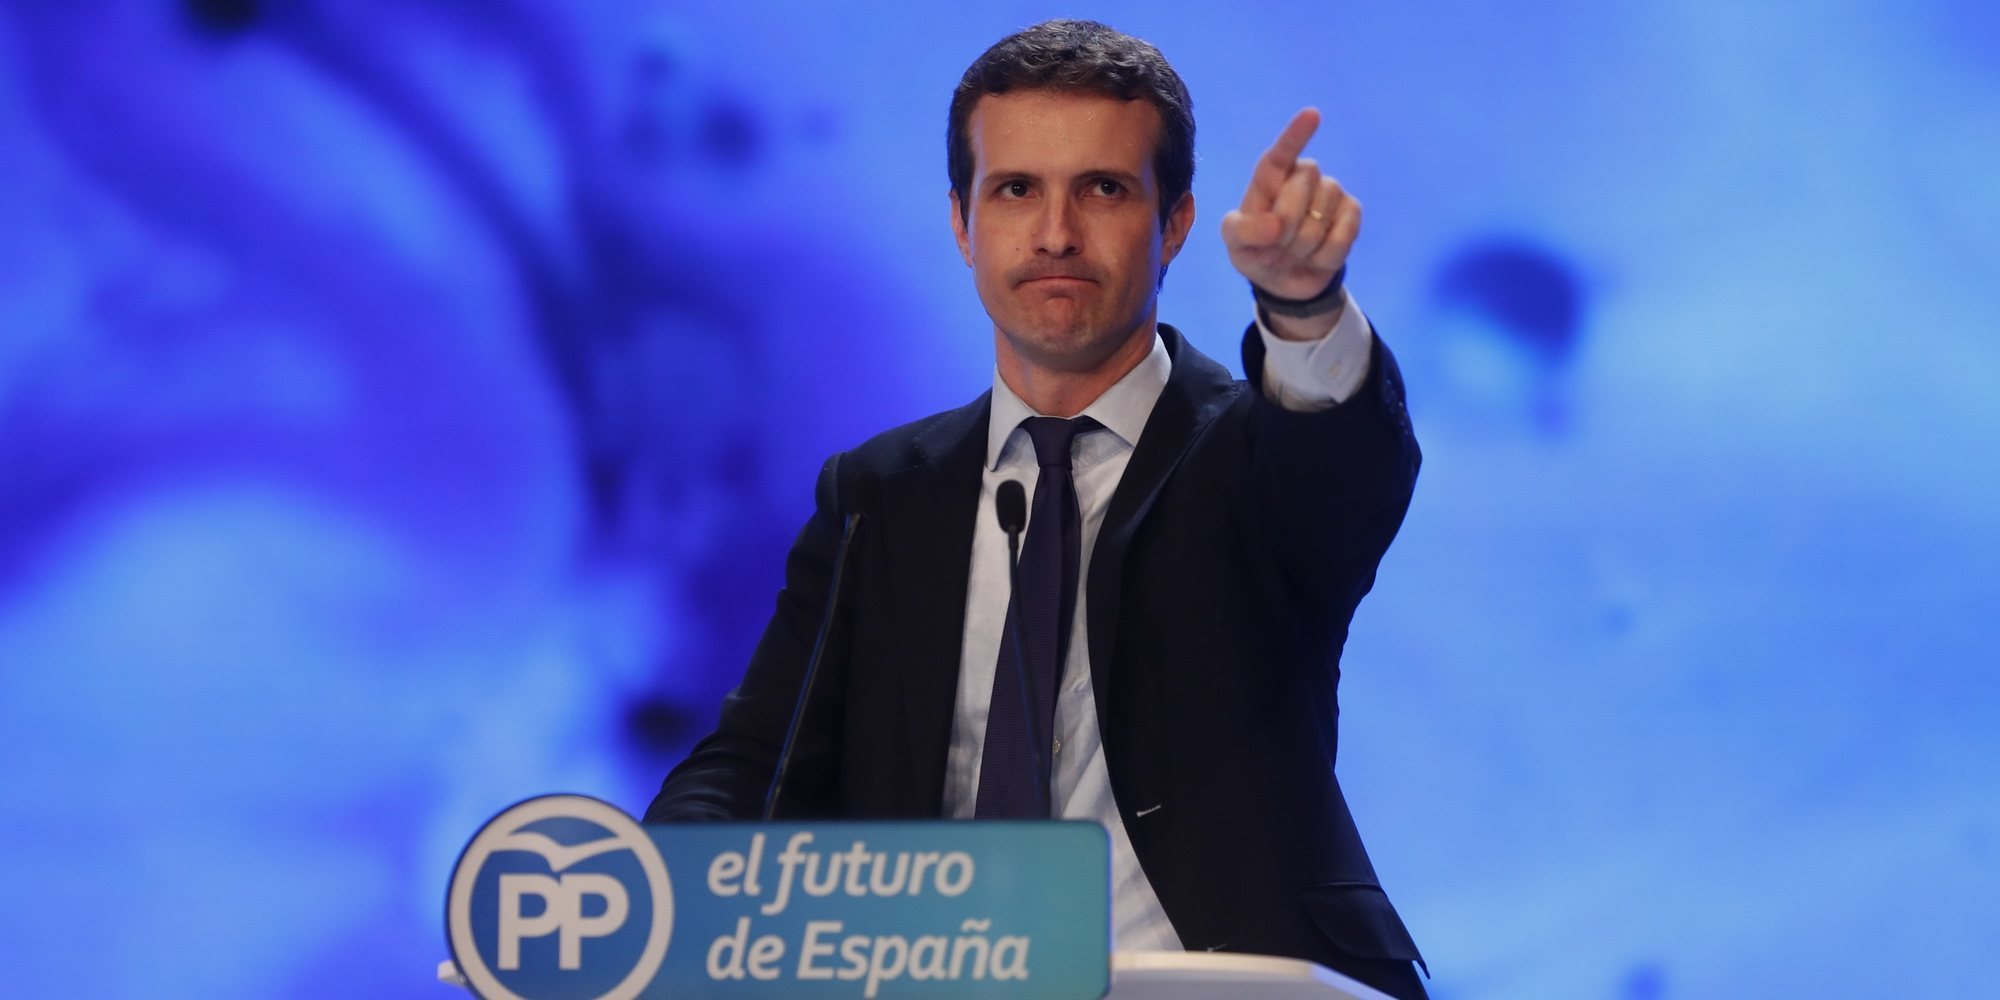 Así es Pablo Casado, el joven palentino que ha conquistado la presidencia del PP por primarias